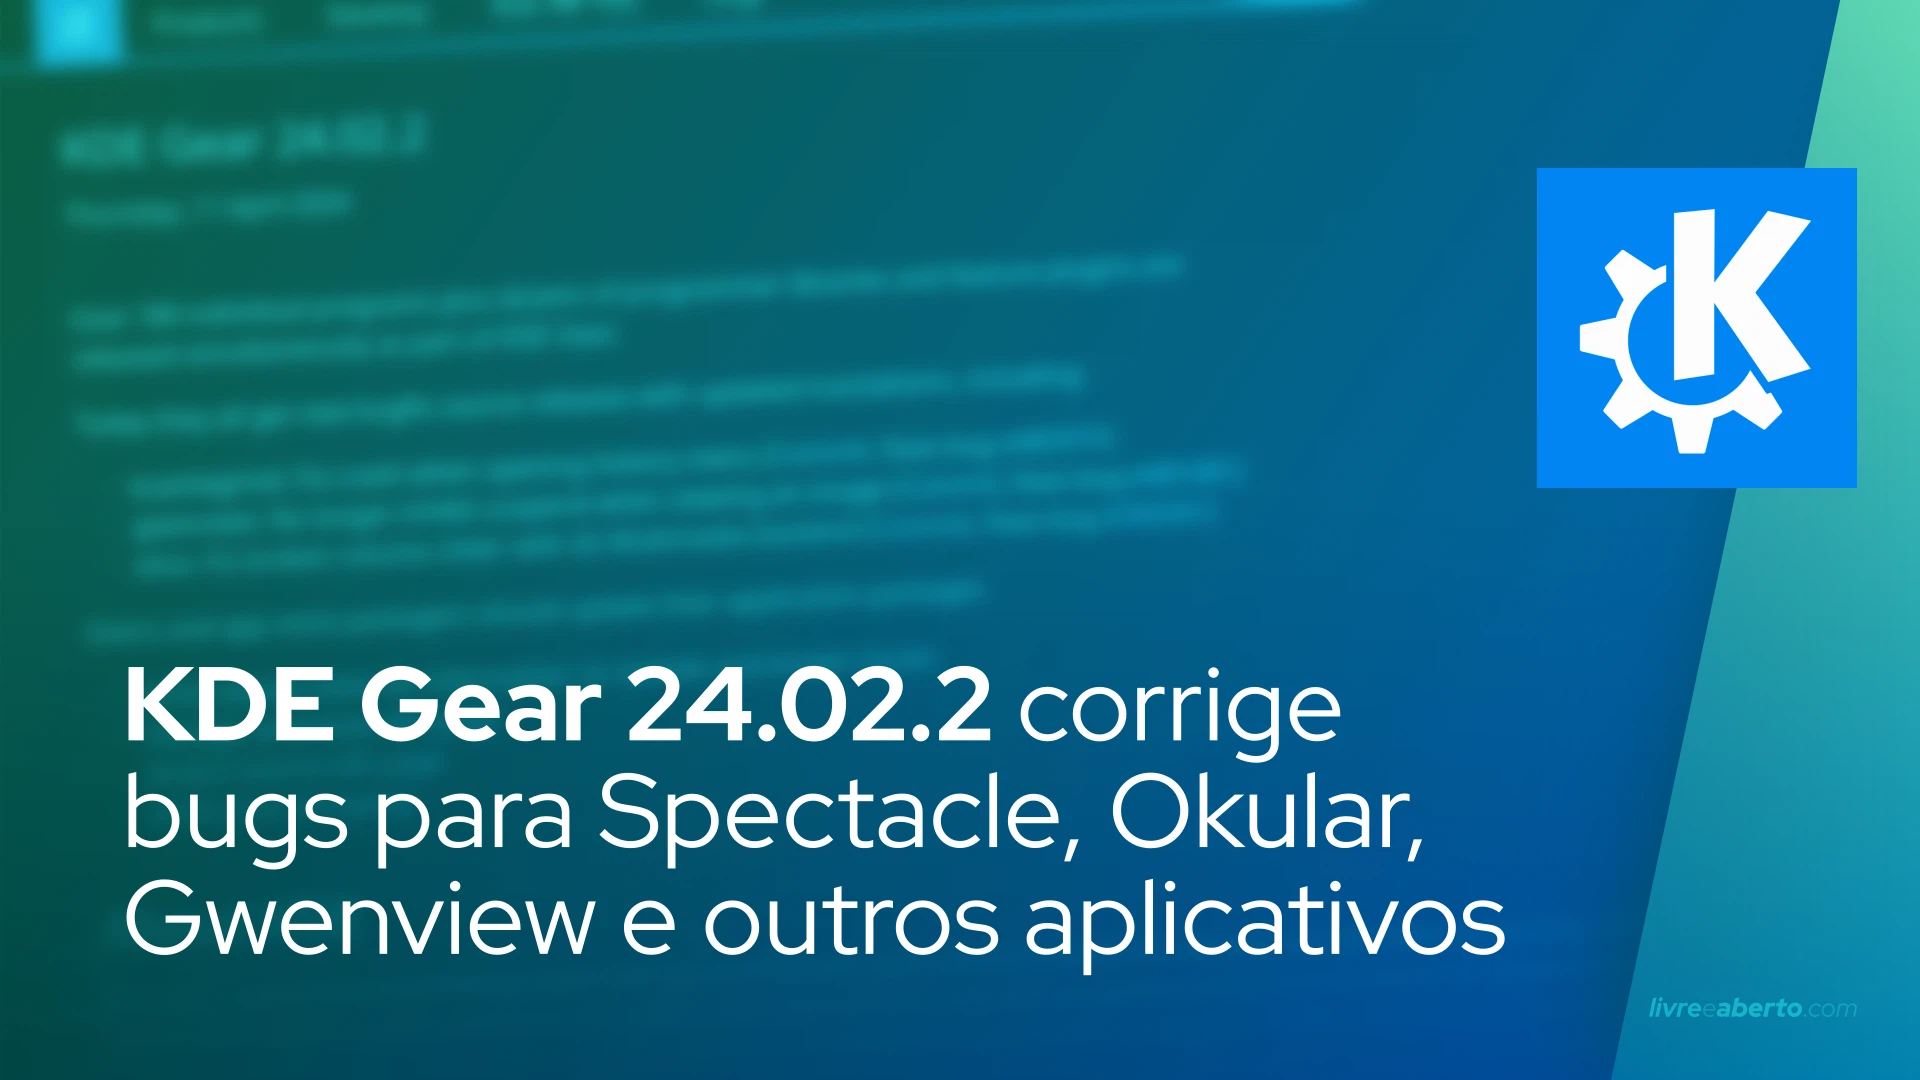 KDE Gear 24.02.2 traz correções de bugs para Spectacle, Okular, Gwenview e outros aplicativos